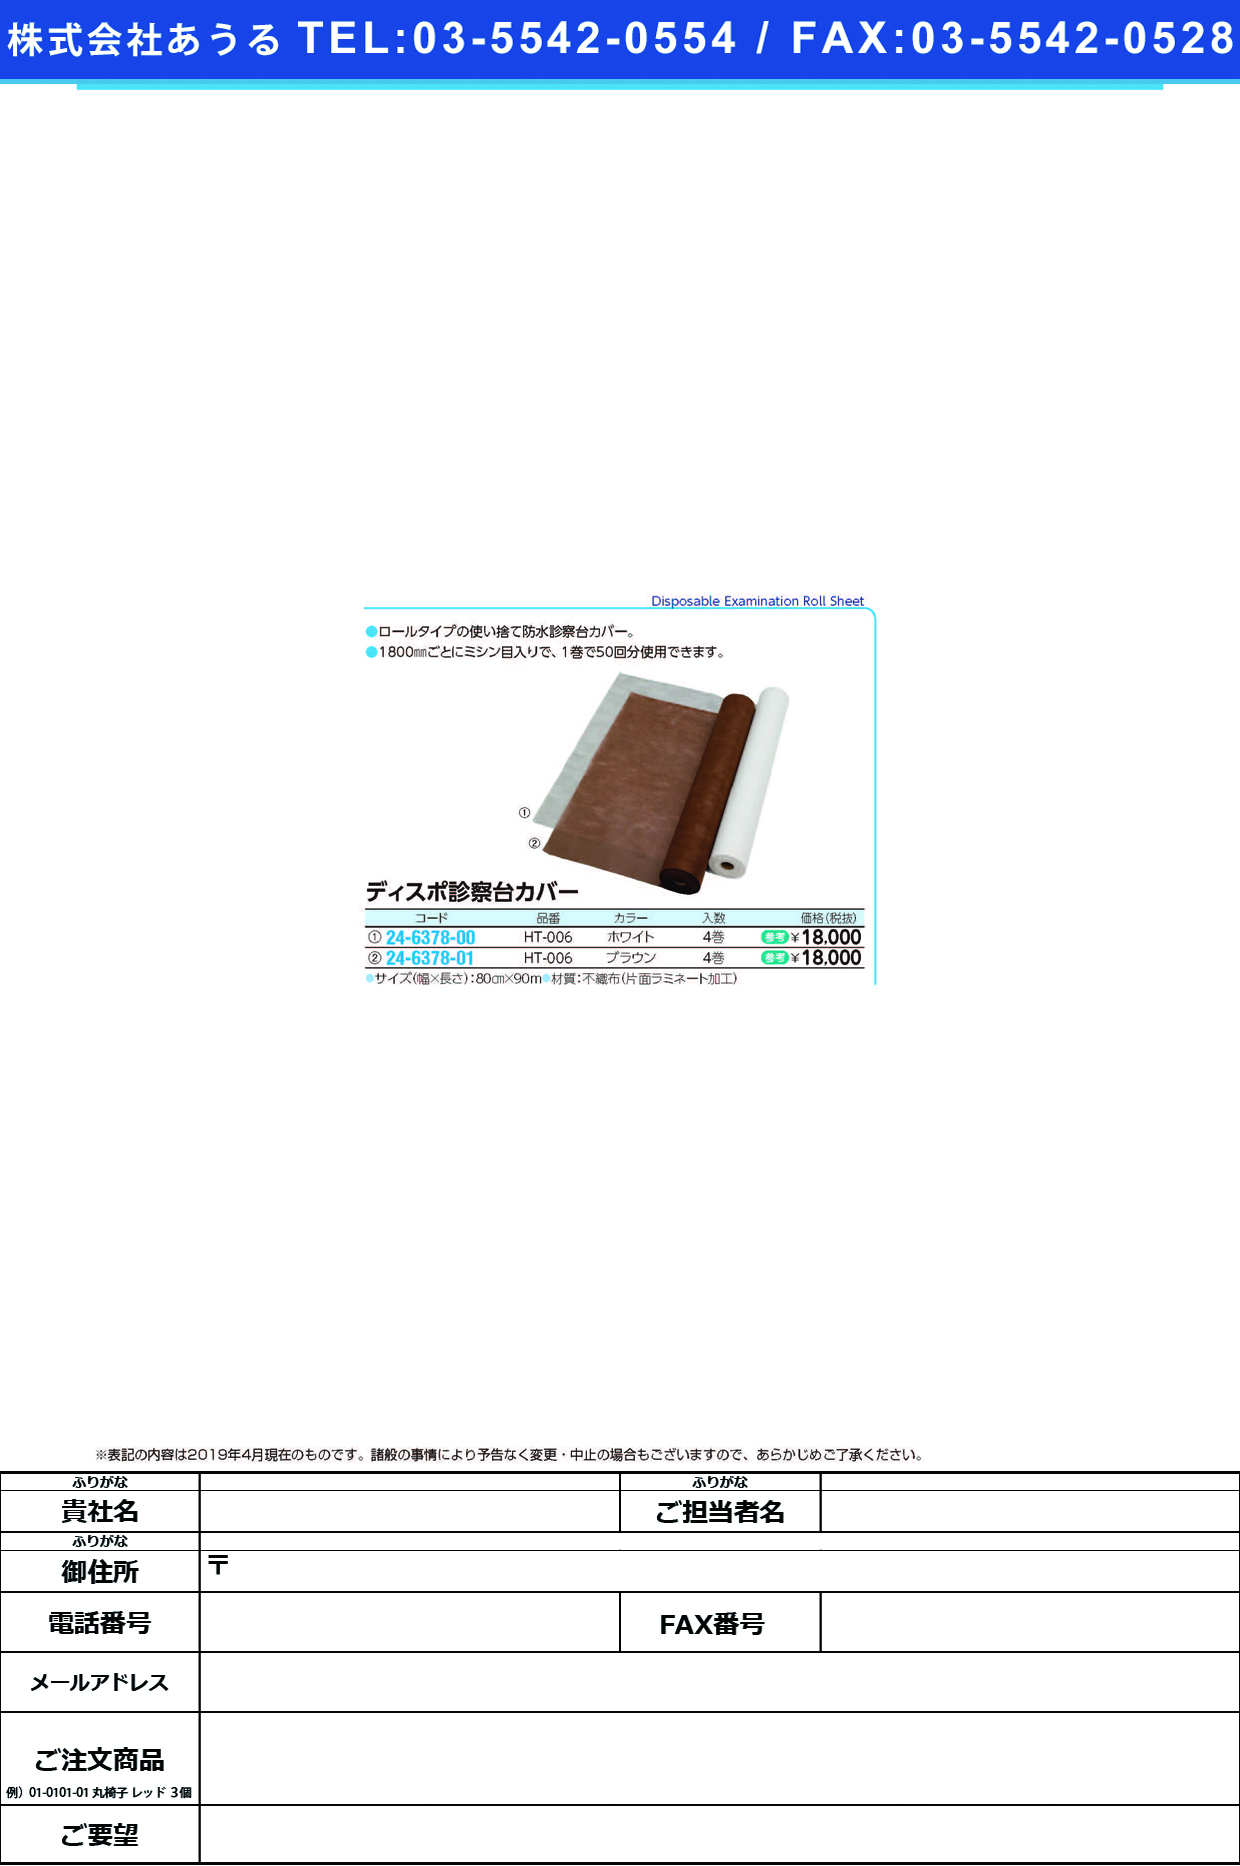 (24-6378-00)ディスポ診察台カバー HT-006(ﾎﾜｲﾄ)4ｶﾝｲﾘ ﾃﾞｨｽﾎﾟｼﾝｻﾂﾀﾞｲｶﾊﾞｰ【1箱単位】【2019年カタログ商品】